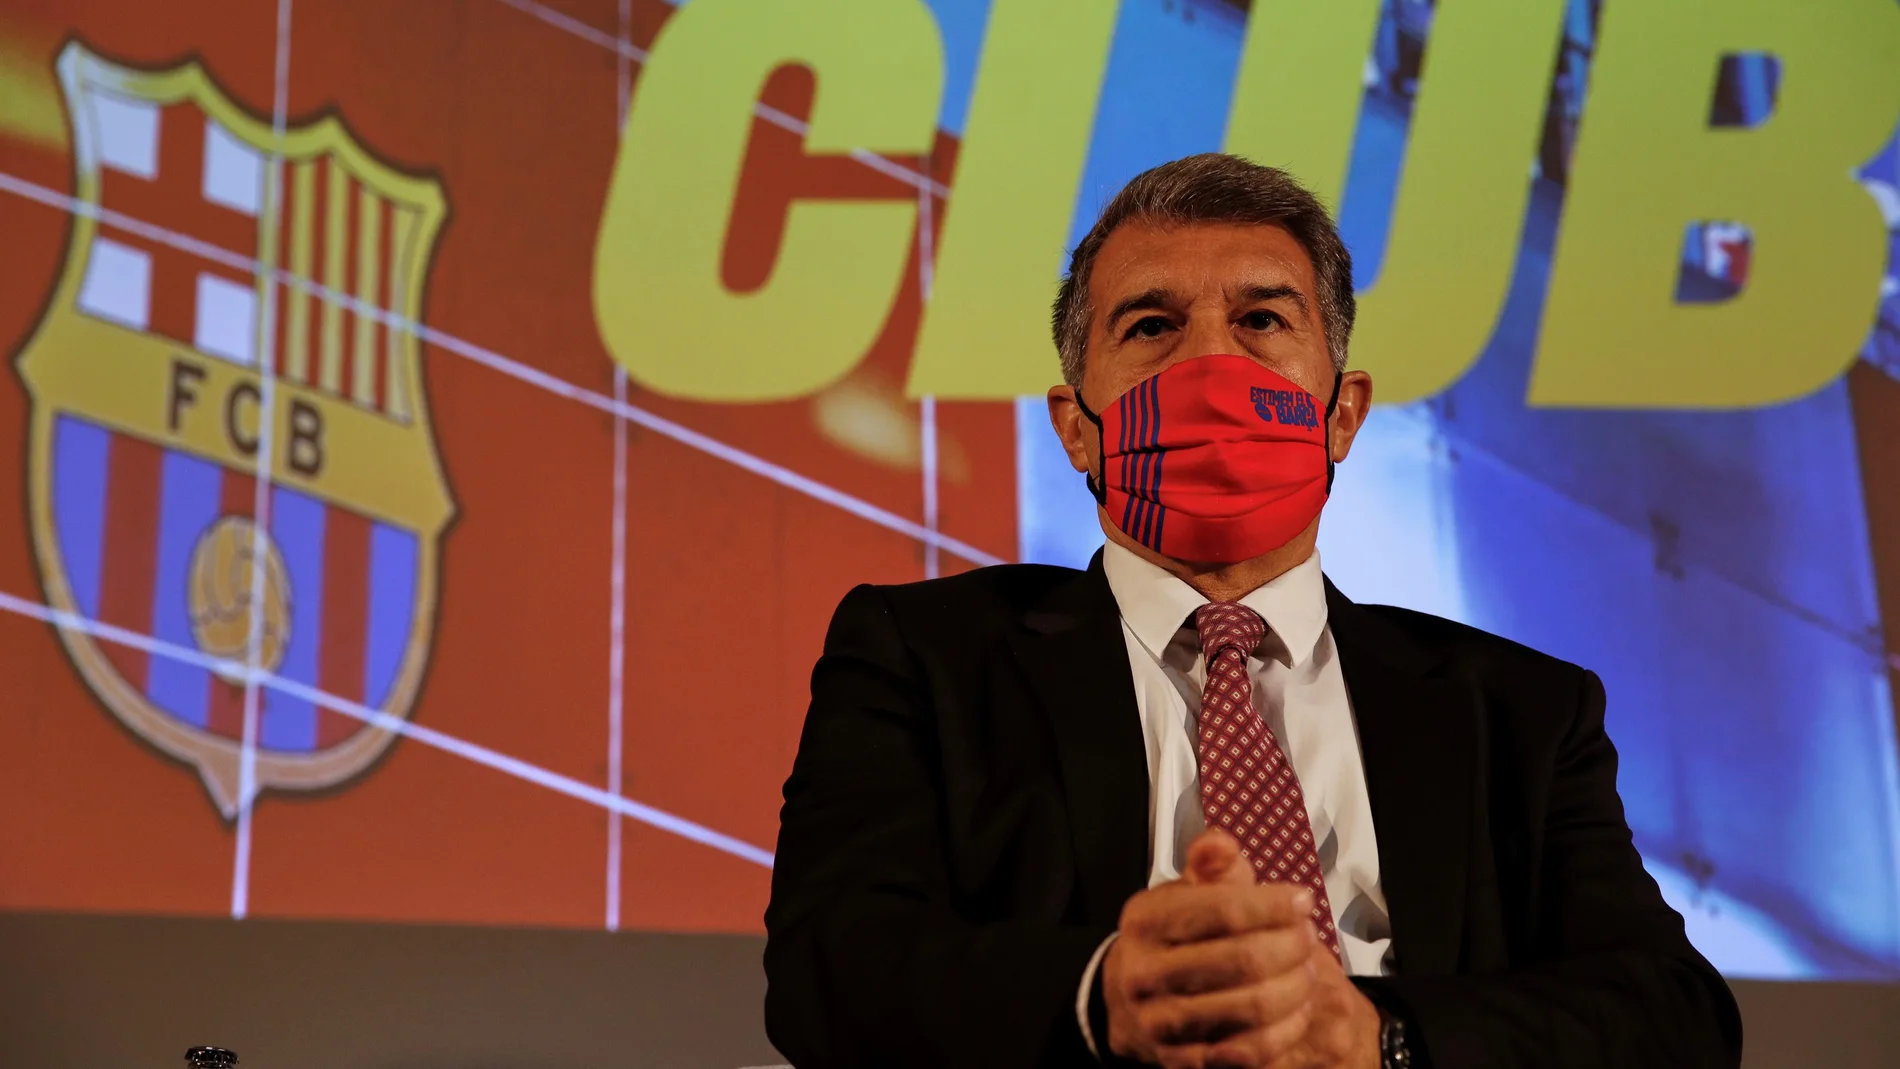 G-El precandidato a la presidencia del FC Barcelona Joan Laporta ha hablado sobre la independencia de Cataluña